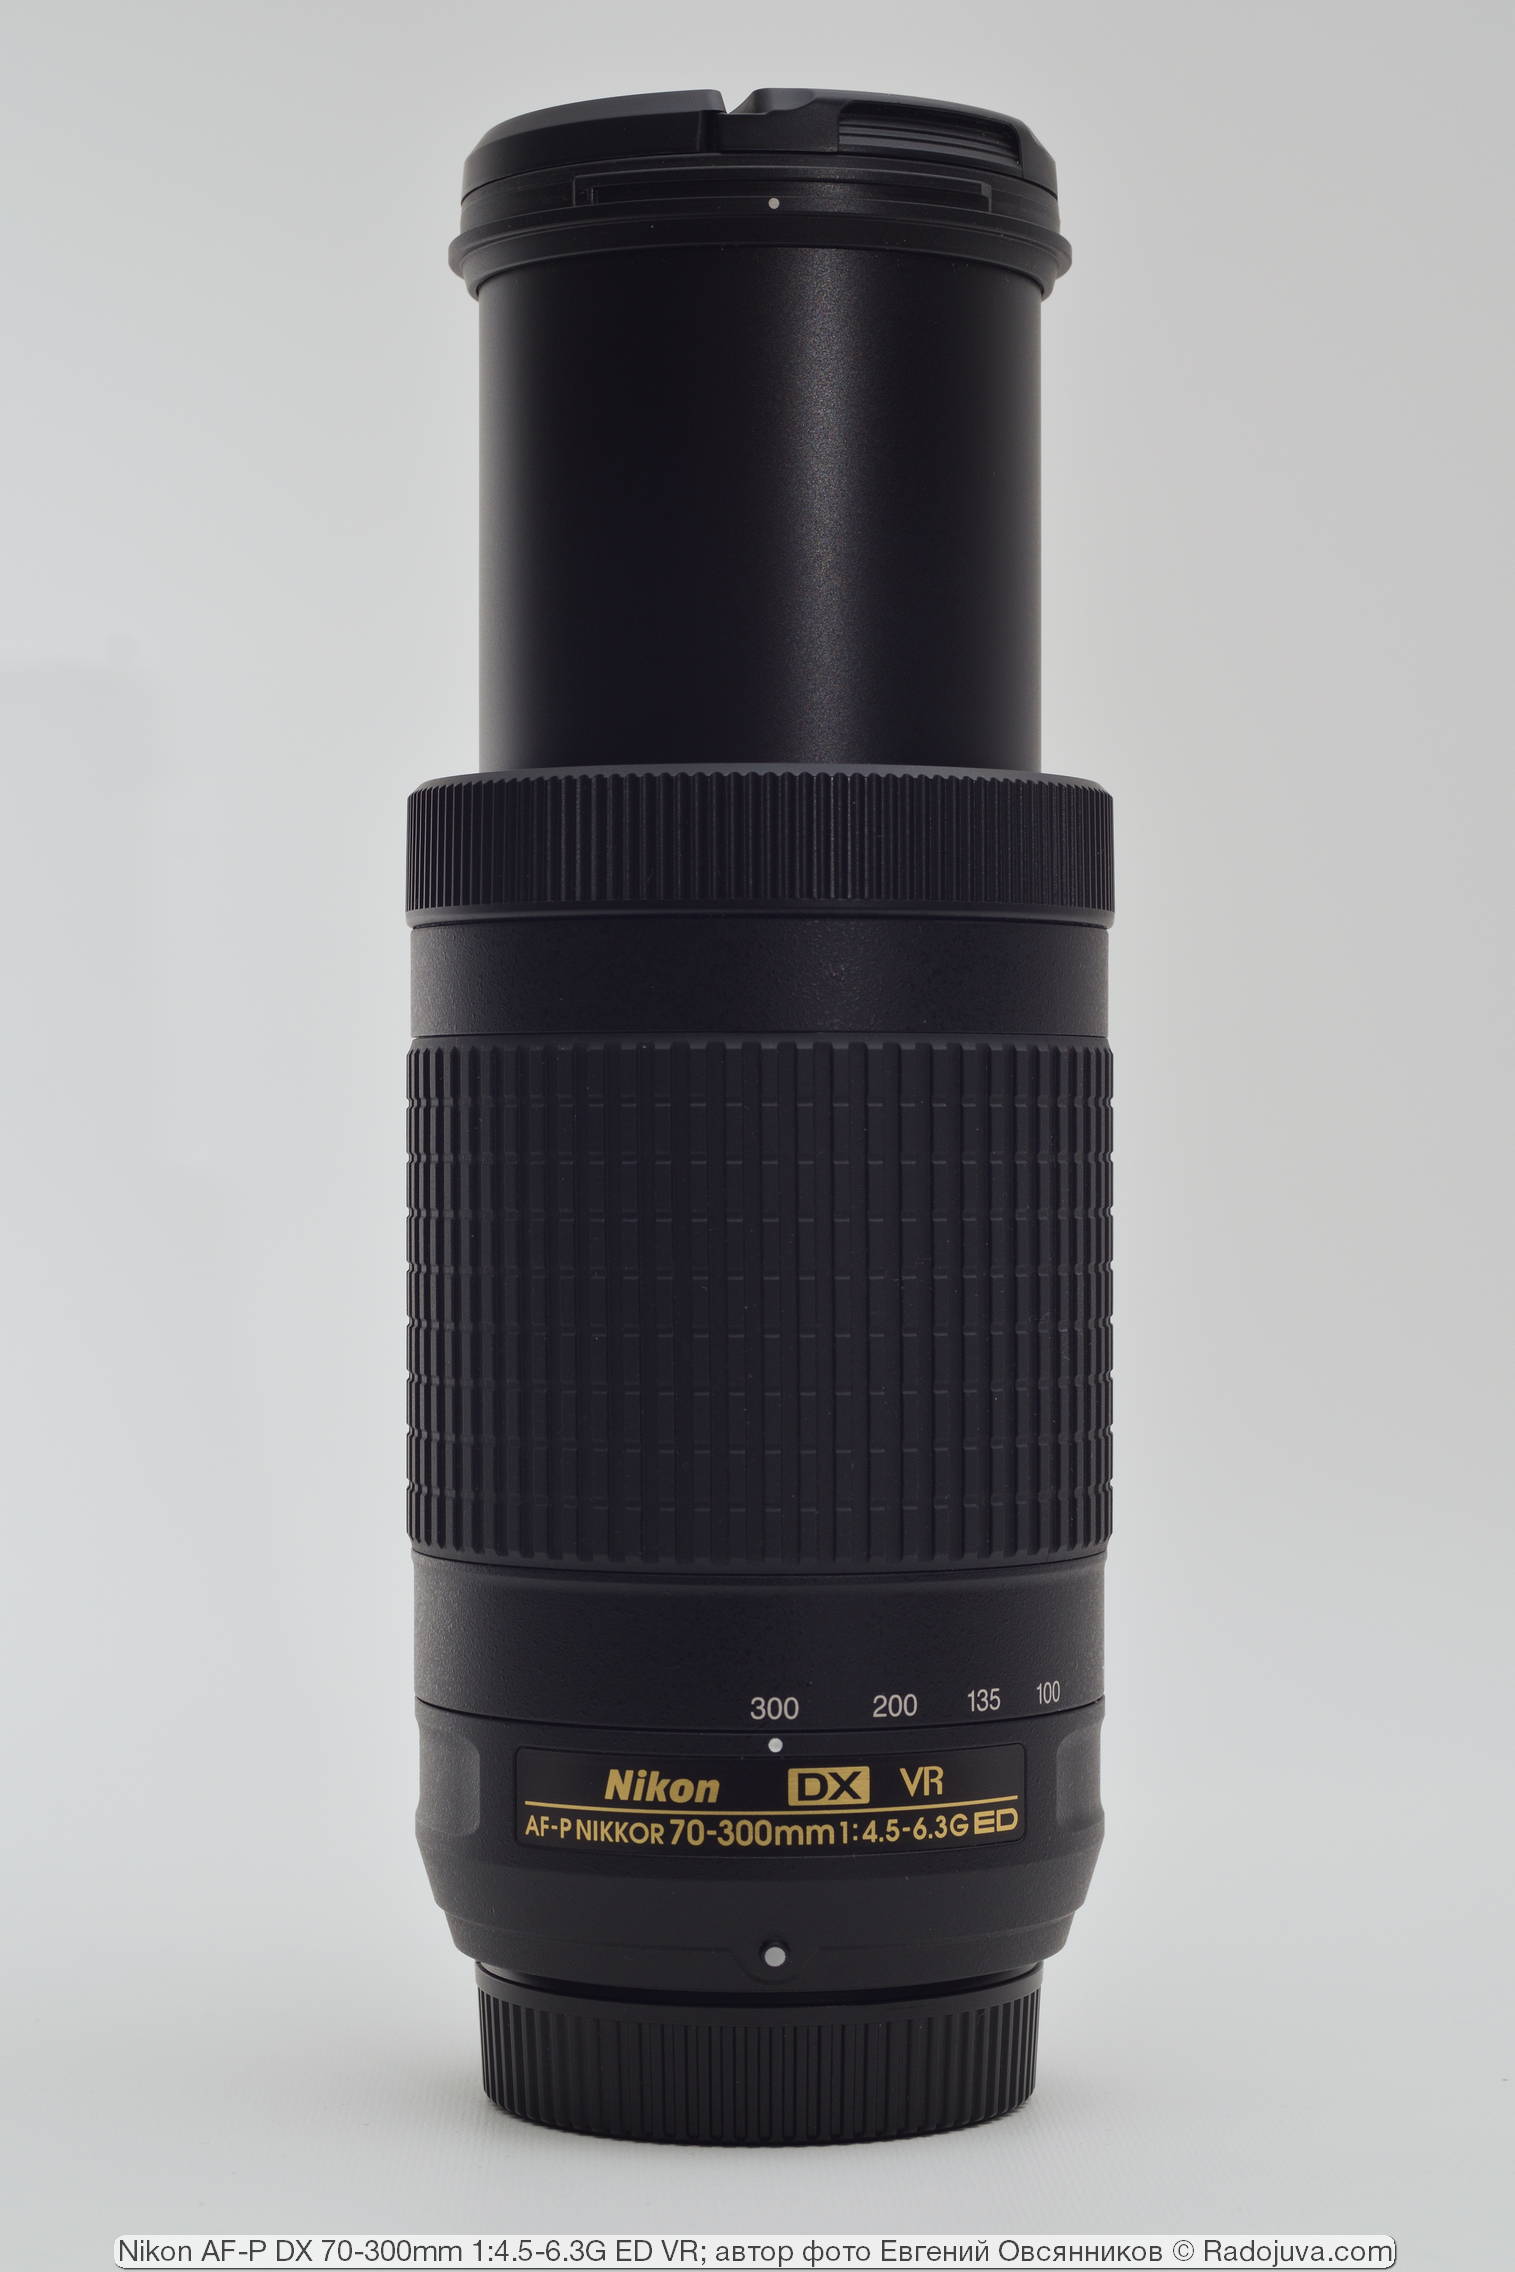 Nikon AF-P DX 70-300mm 1:4.5-6.3G ED VR